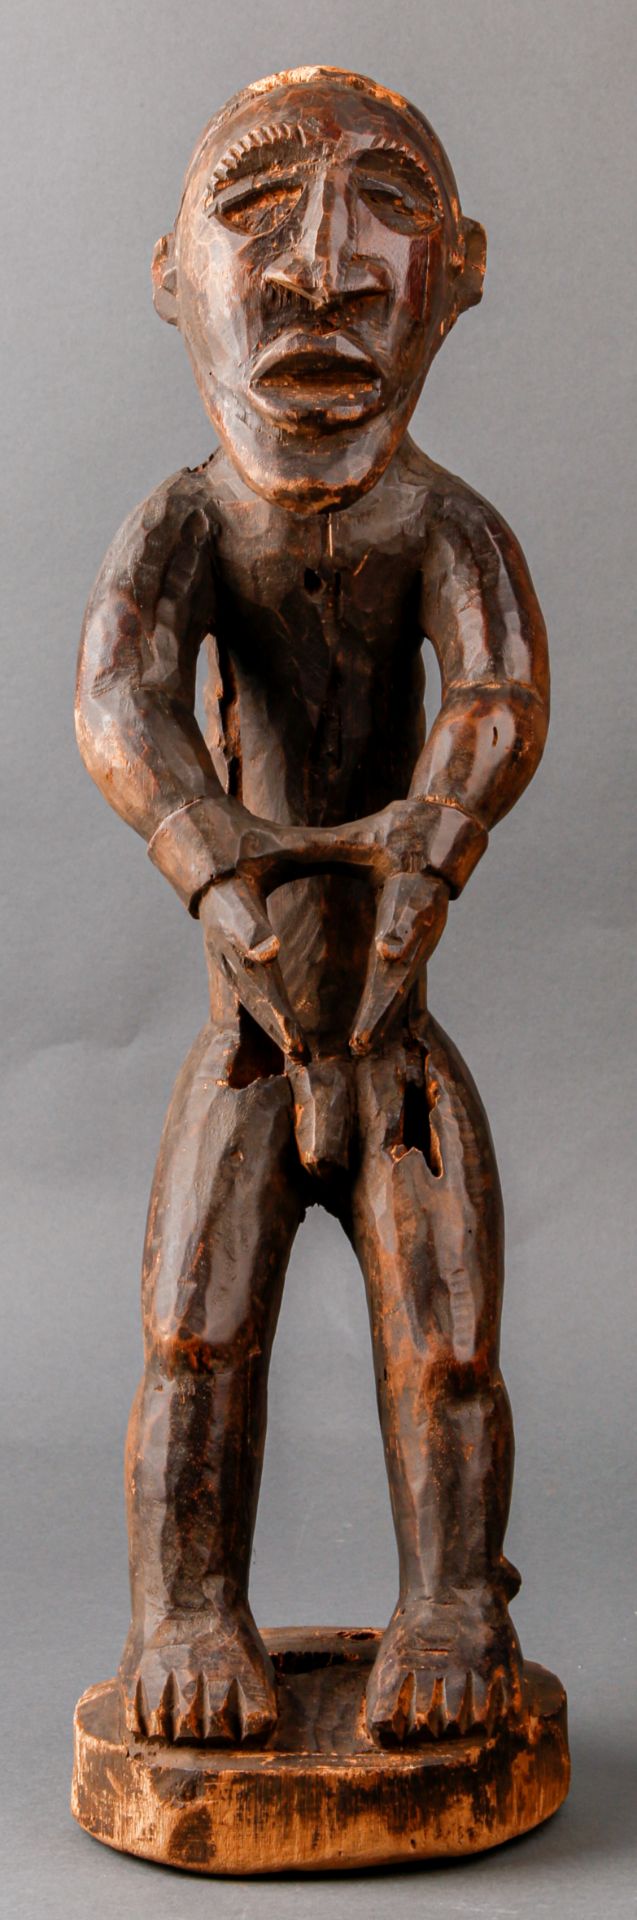 Stehende männliche Figur in Handschellen, 20. Jh., Kameruner Grasland (wohl Bamileke)